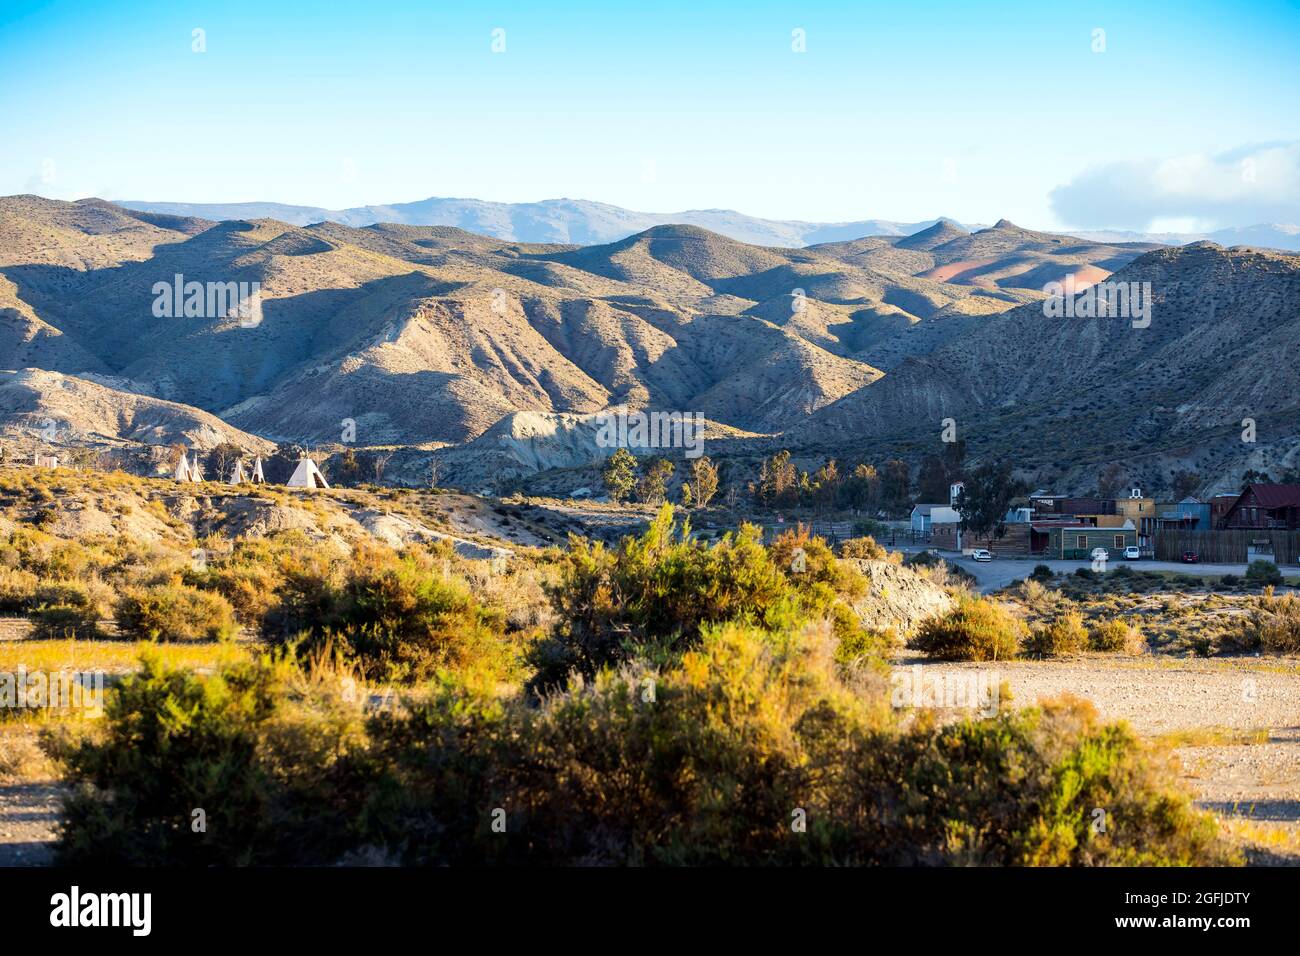 Paesaggio della zona costiera Cabo de Gata, provincia di Almeria, Andalusia, Spagna. Oasys MiniHollywood, parco a tema Wild West nel deserto di Tabernas Foto Stock